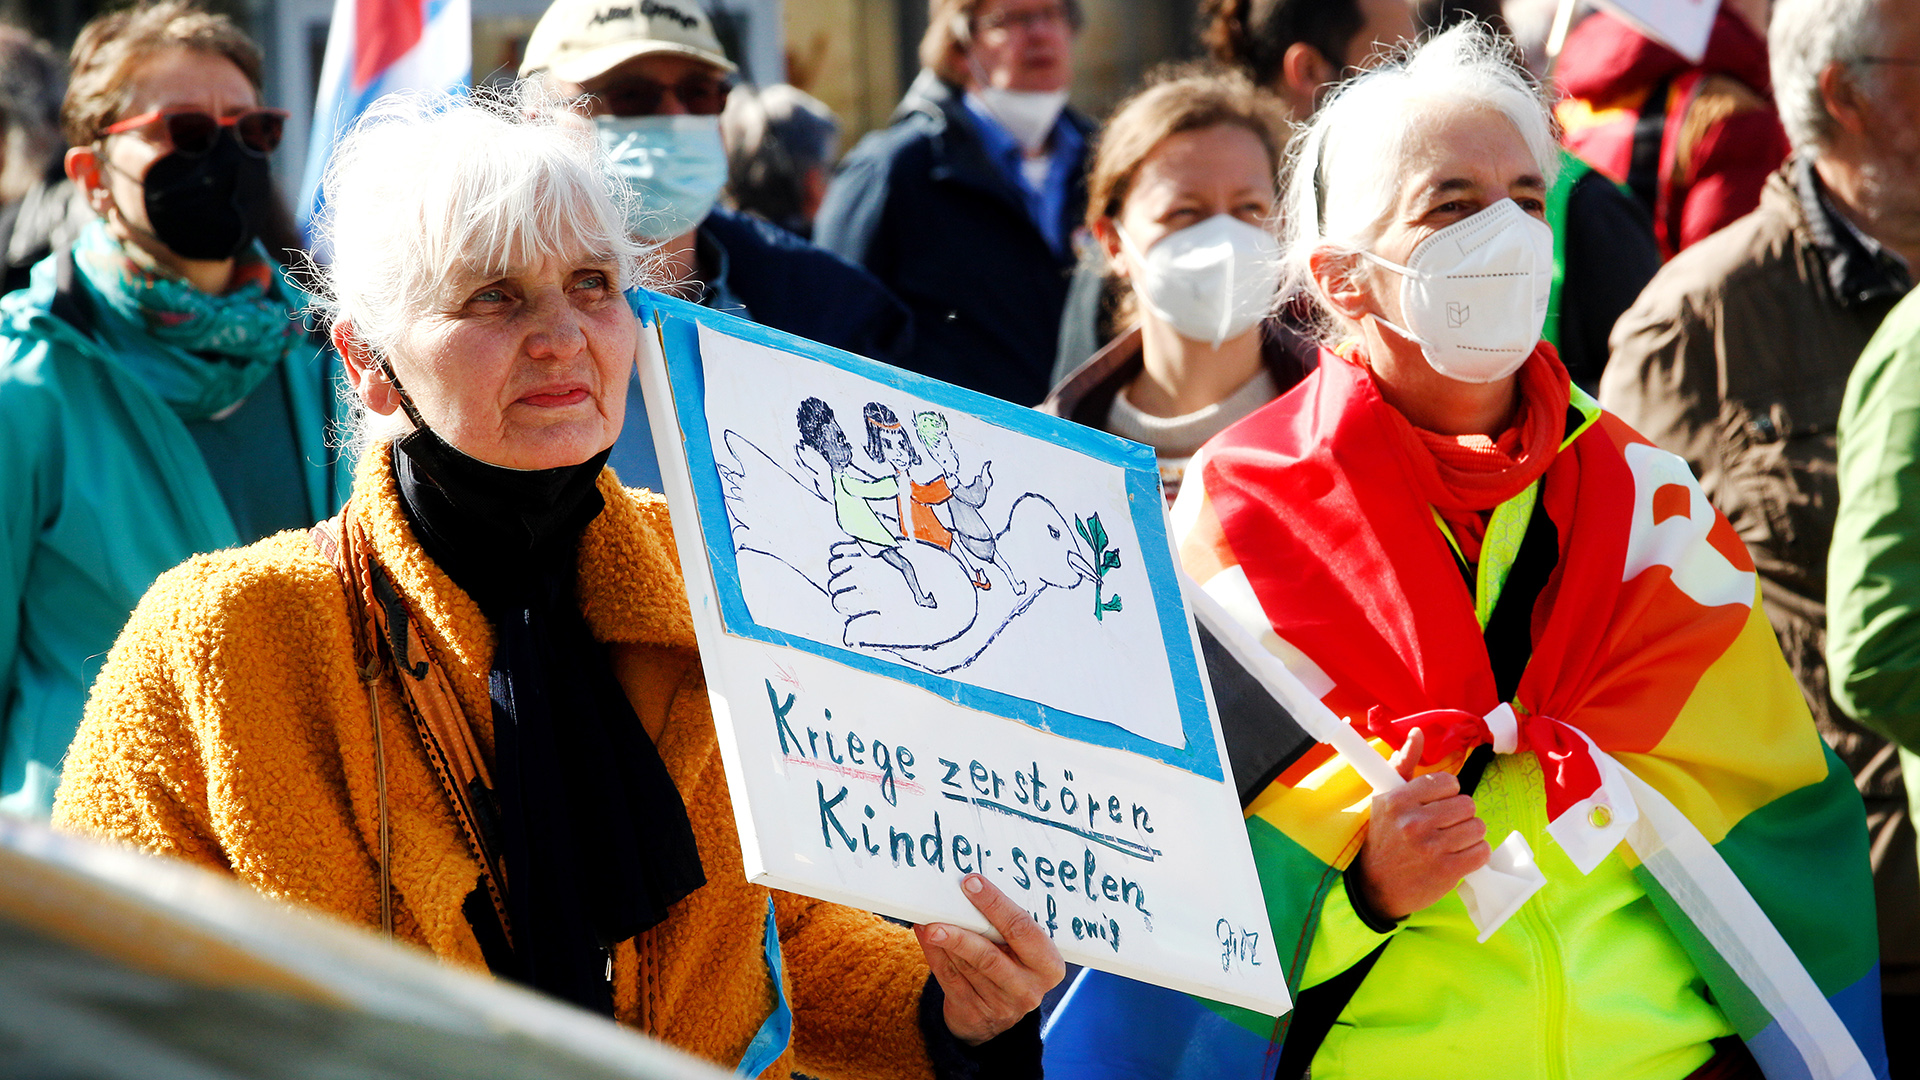  Beim Start des Ostermarsches Rhein/Ruhr in Duisburg hält eine Teilnehmerin ein Plakat mit dem Text: "Kriege zerstören Kinderseelen". | dpa